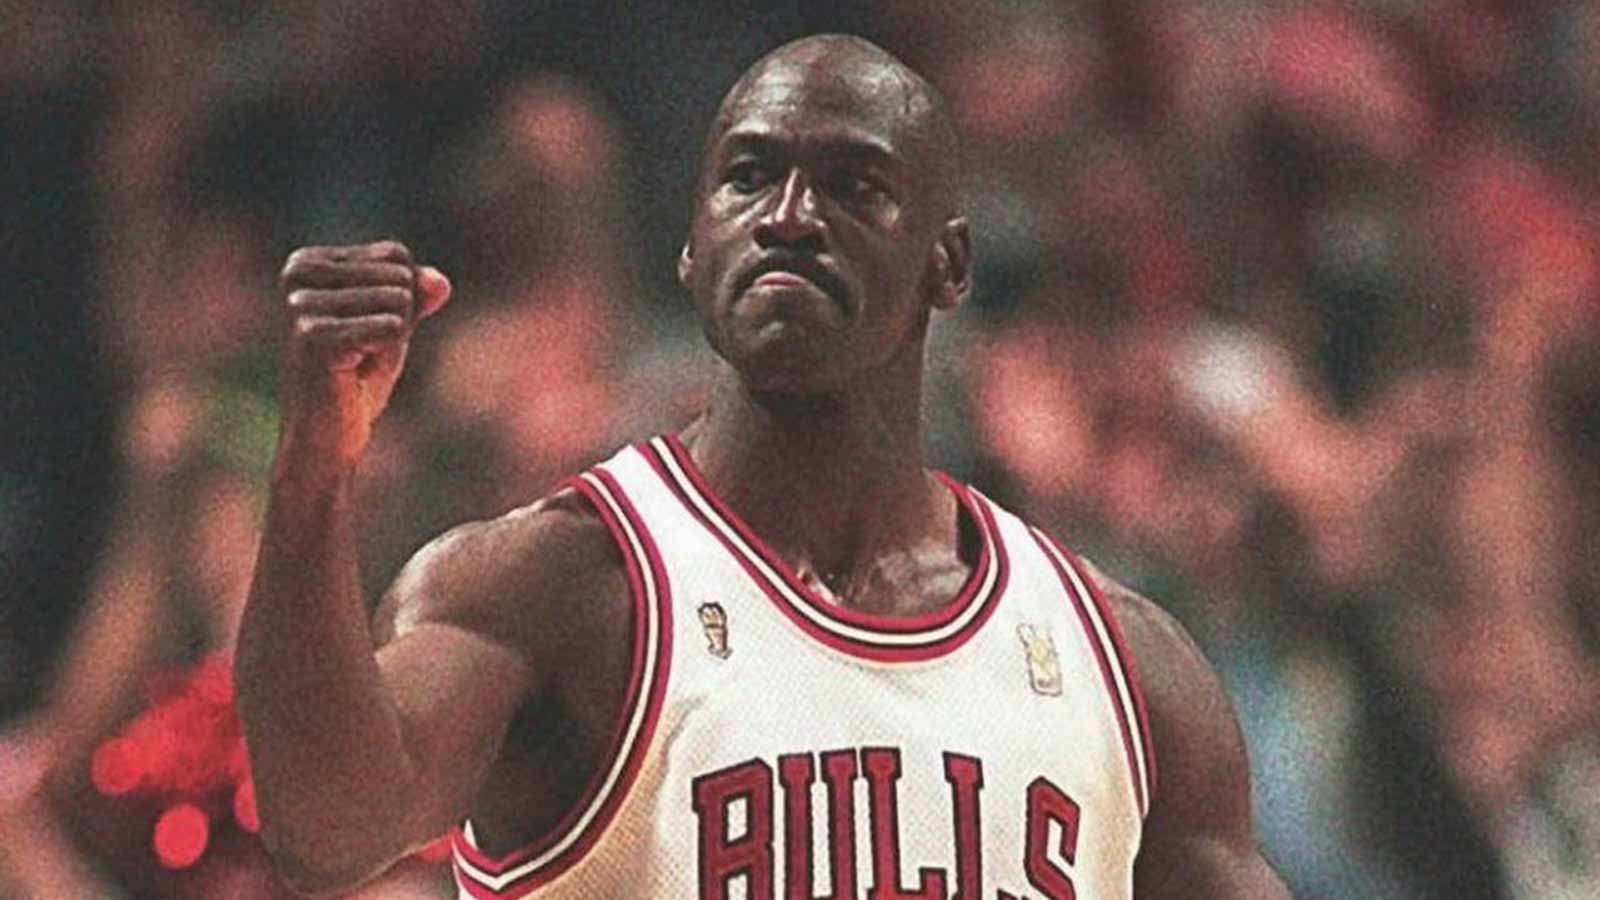 Michael Jordan Signed 1985 'Player Sample' Air Jordan 1s, Sizes 13, 13.5, VICTORIAM, PART II, 2023